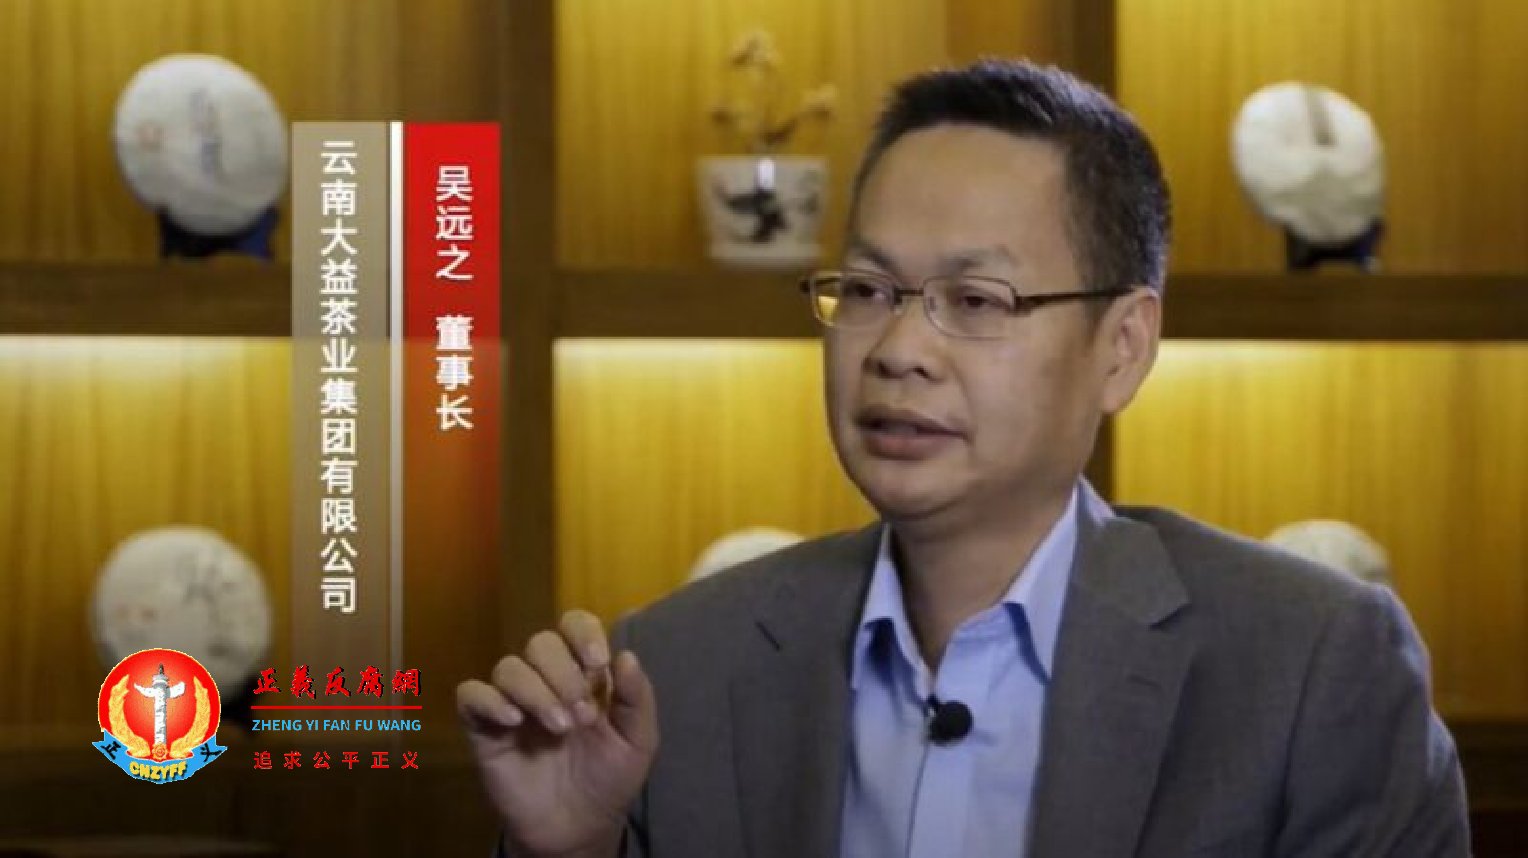 2021年12月19日，云南“茶王”吴远之因突发脑溢血去世，终年55岁。吴远之生前是大益集团董事长，拥有65家公司的控制权。.png